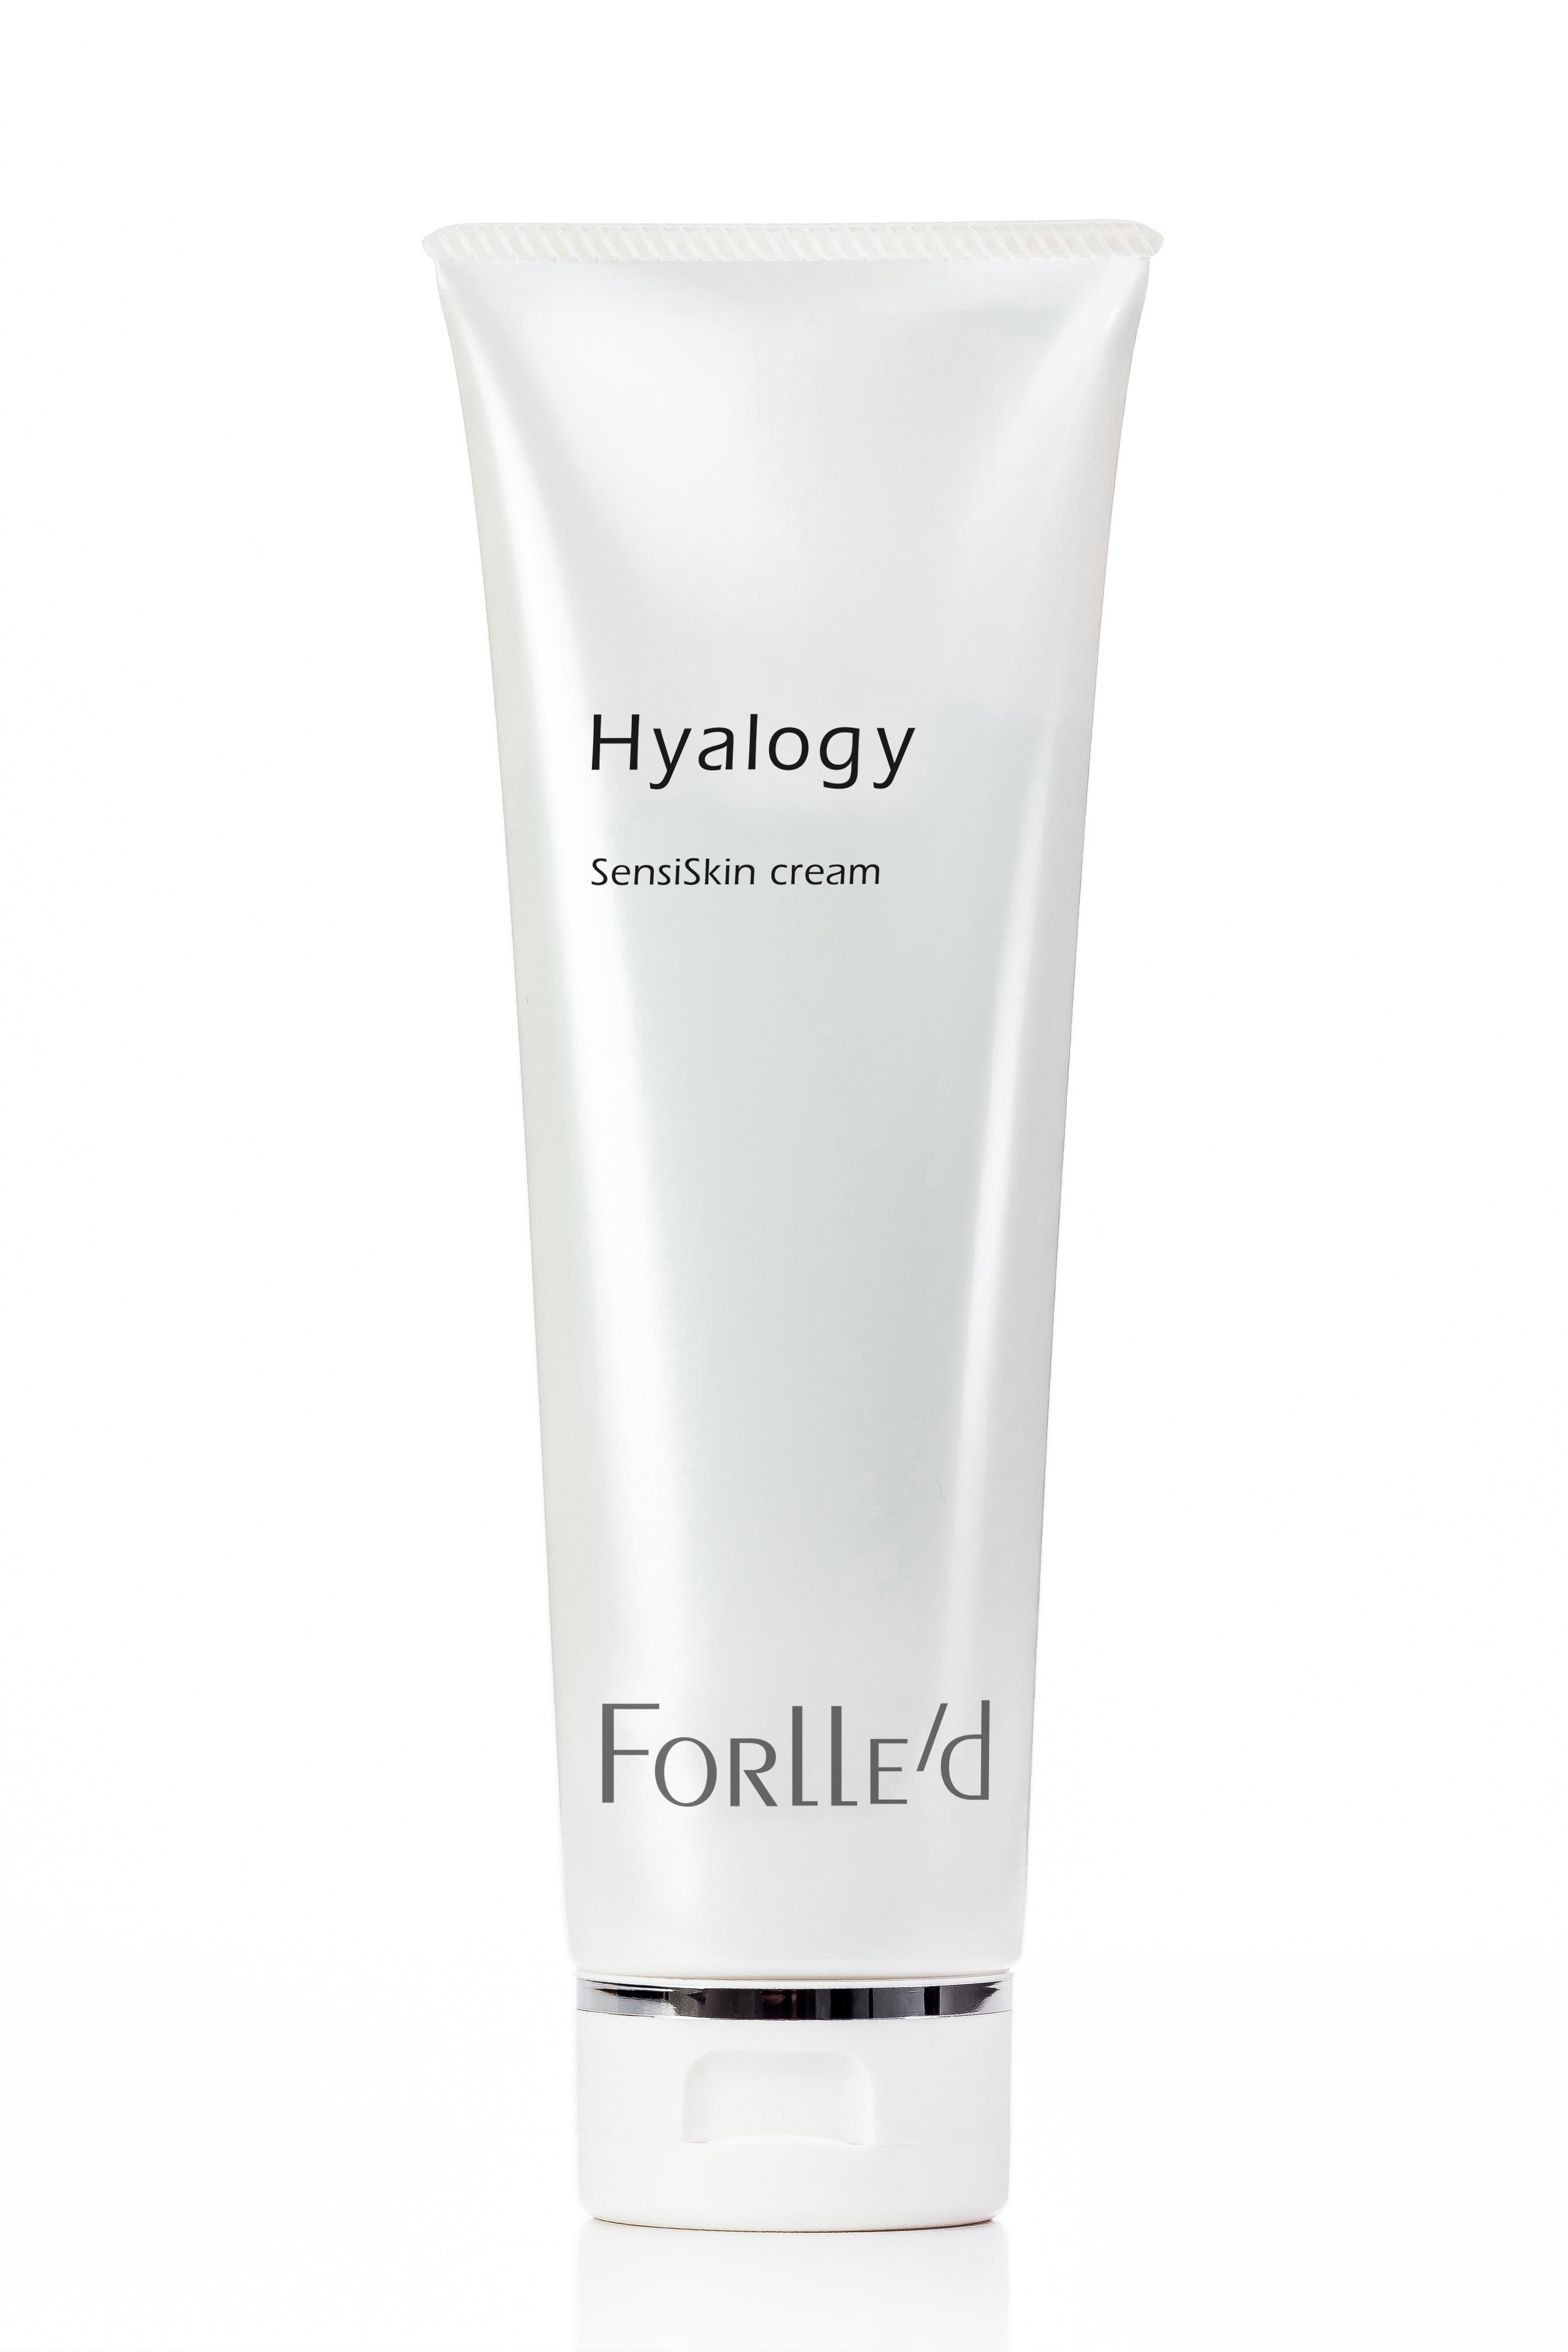 Forlle'd Hyalogy SensiSkin cream (100ml)